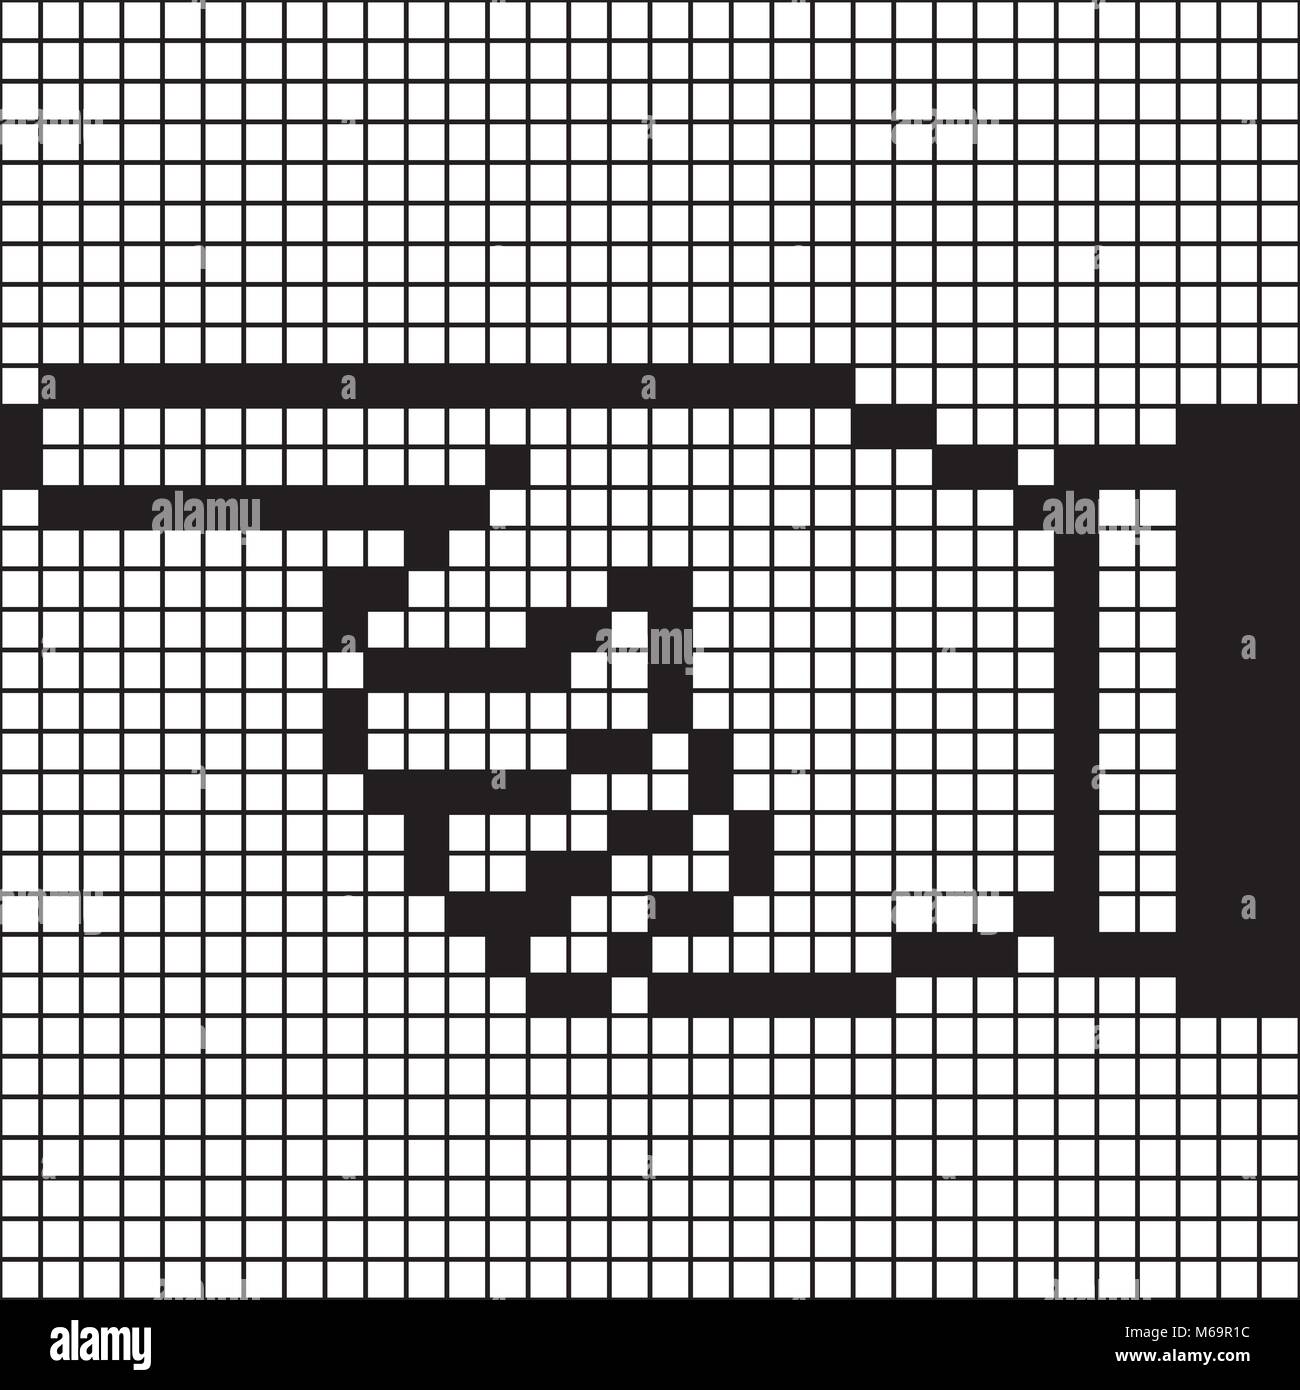 Ponting businesmen mano - 8 bit computer graphic style Illustrazione Vettoriale